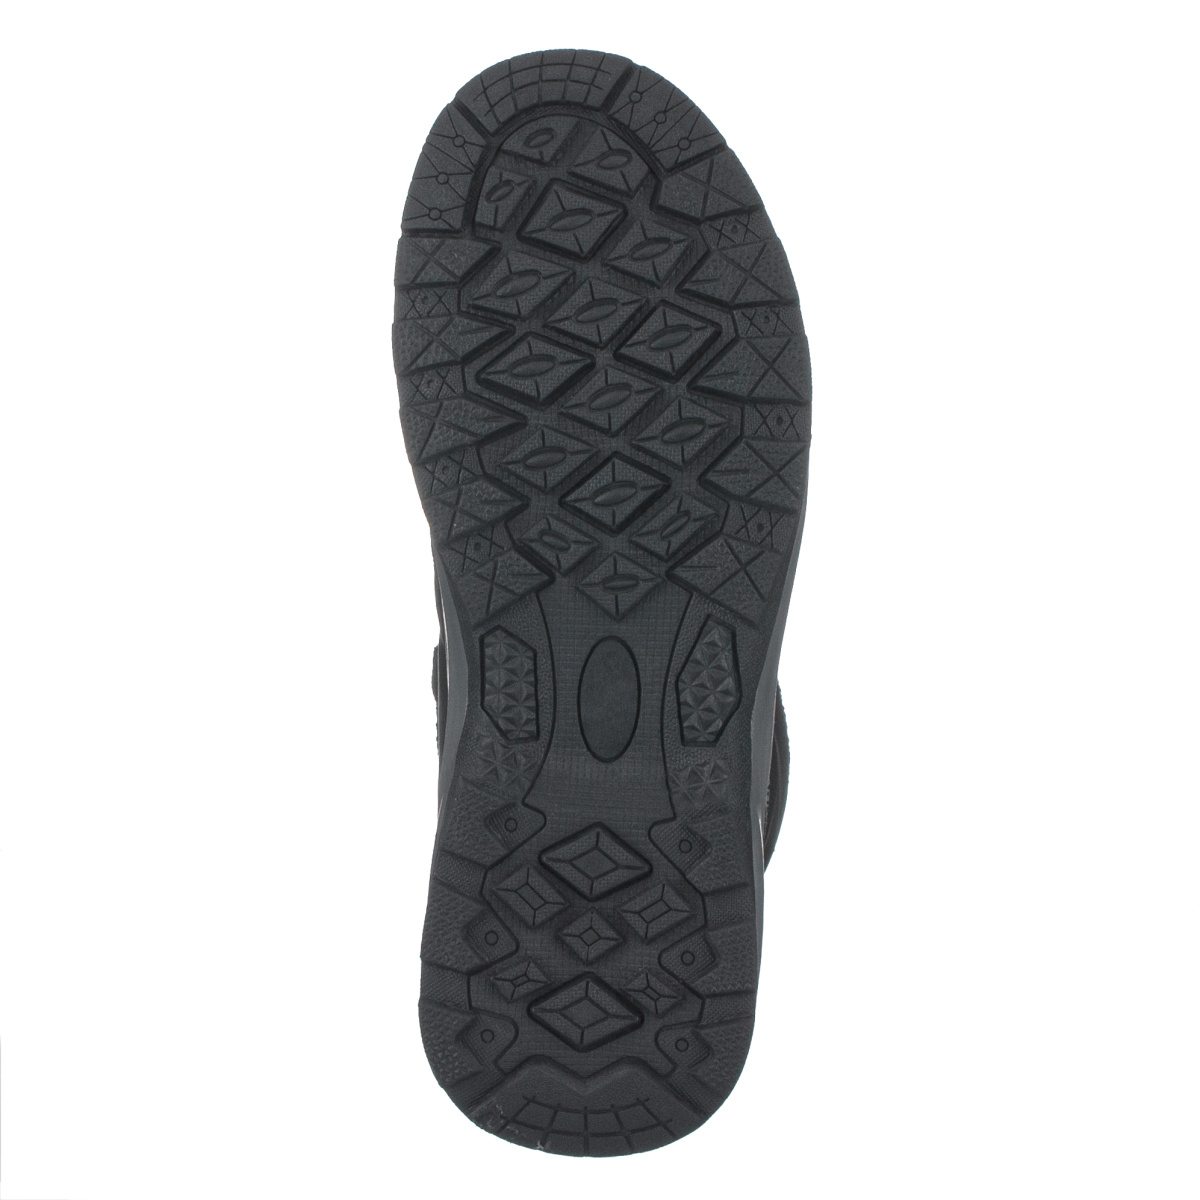 Kotníčková obuv DK 1027  EU 36